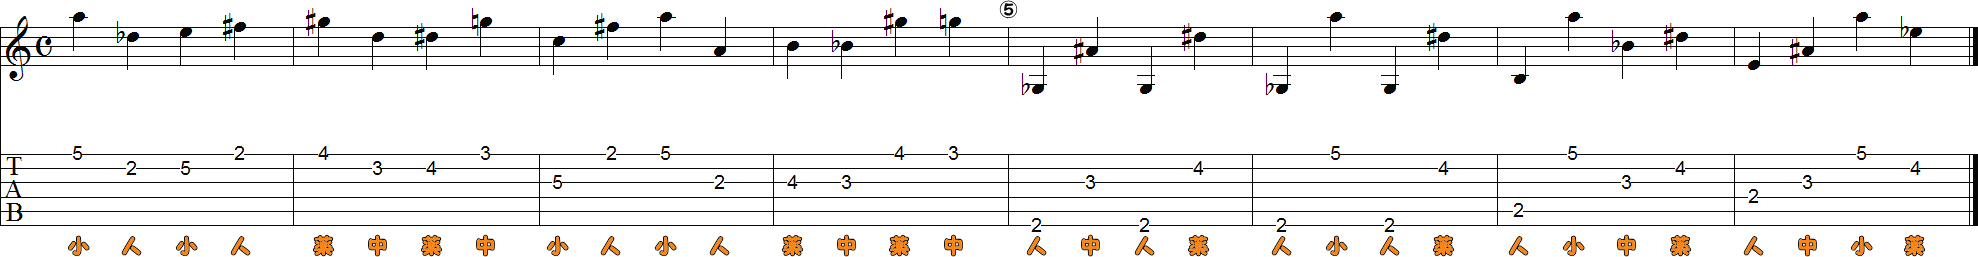 6・5・4・3・2・1弦の運指押弦8小節